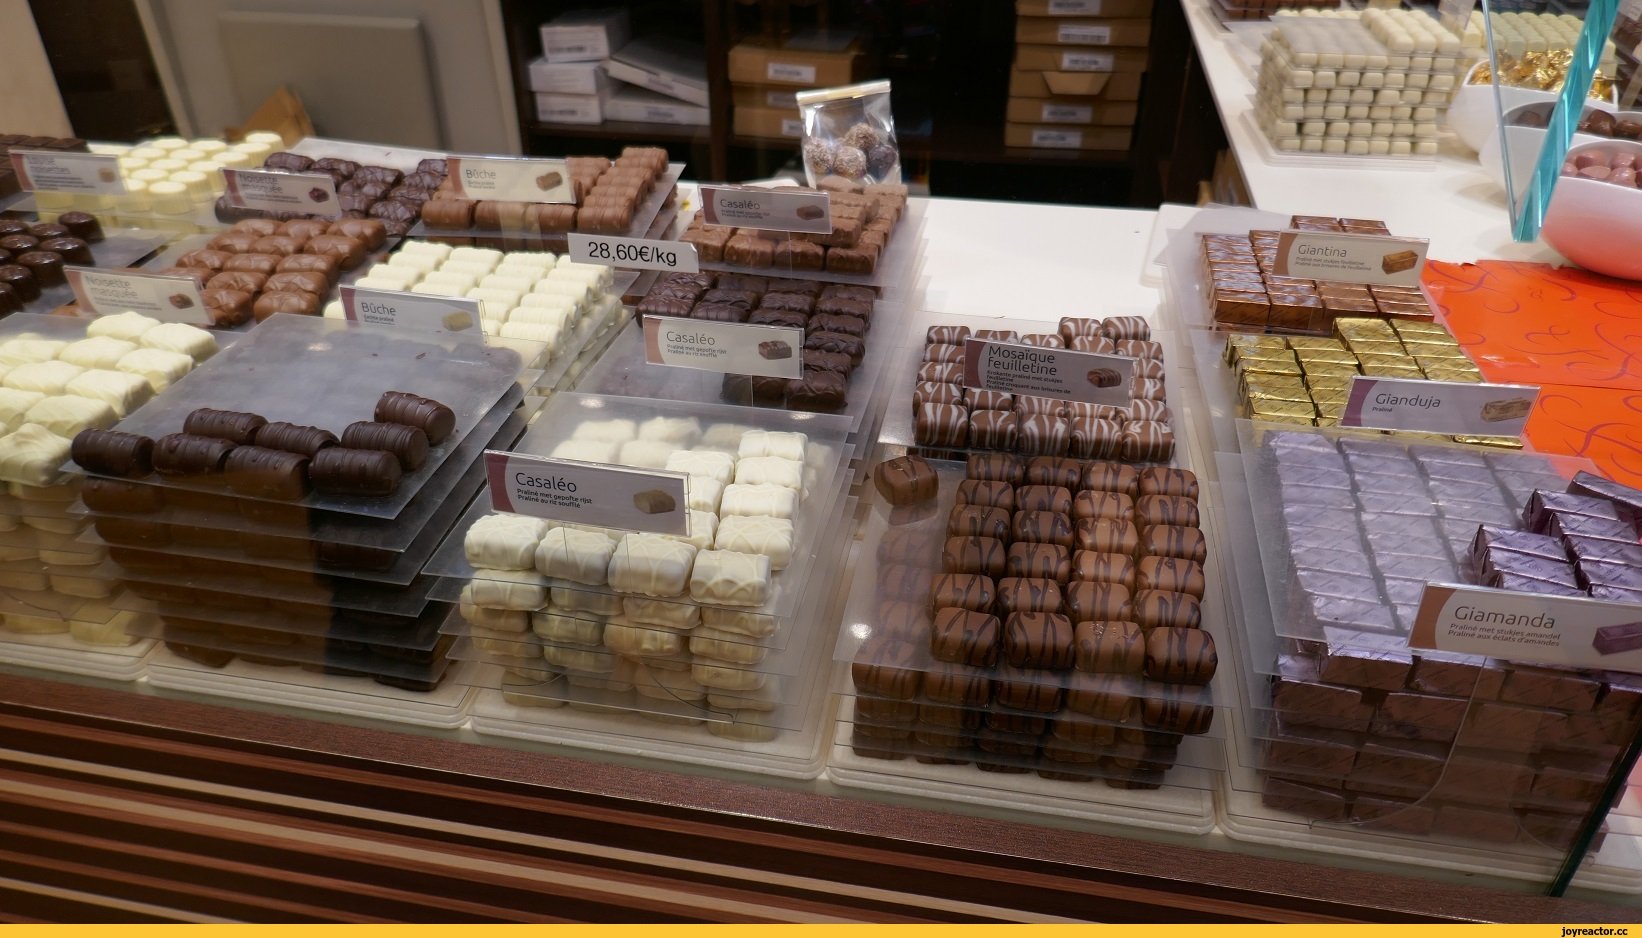 Бельгийский шоколад купить. Бельгийский шоколад в Ашане. Бельгийский шоколад фура. Бельгийский шоколад плитка из Табриса. Бельгийский шоколад 20000 рублей.